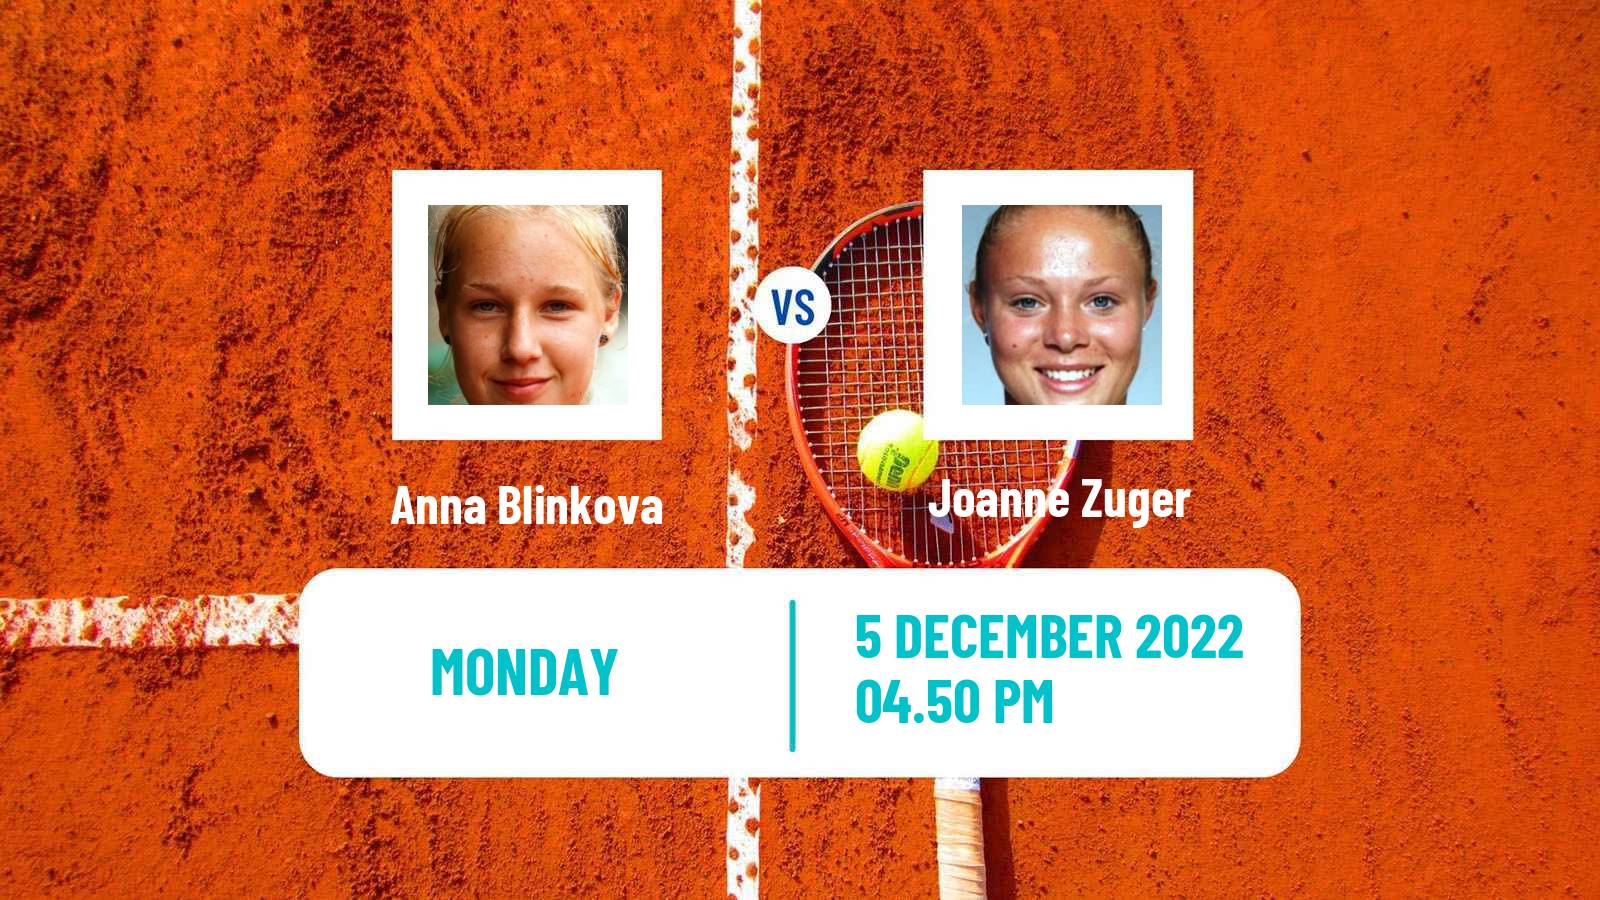 Tennis ATP Challenger Anna Blinkova - Joanne Zuger